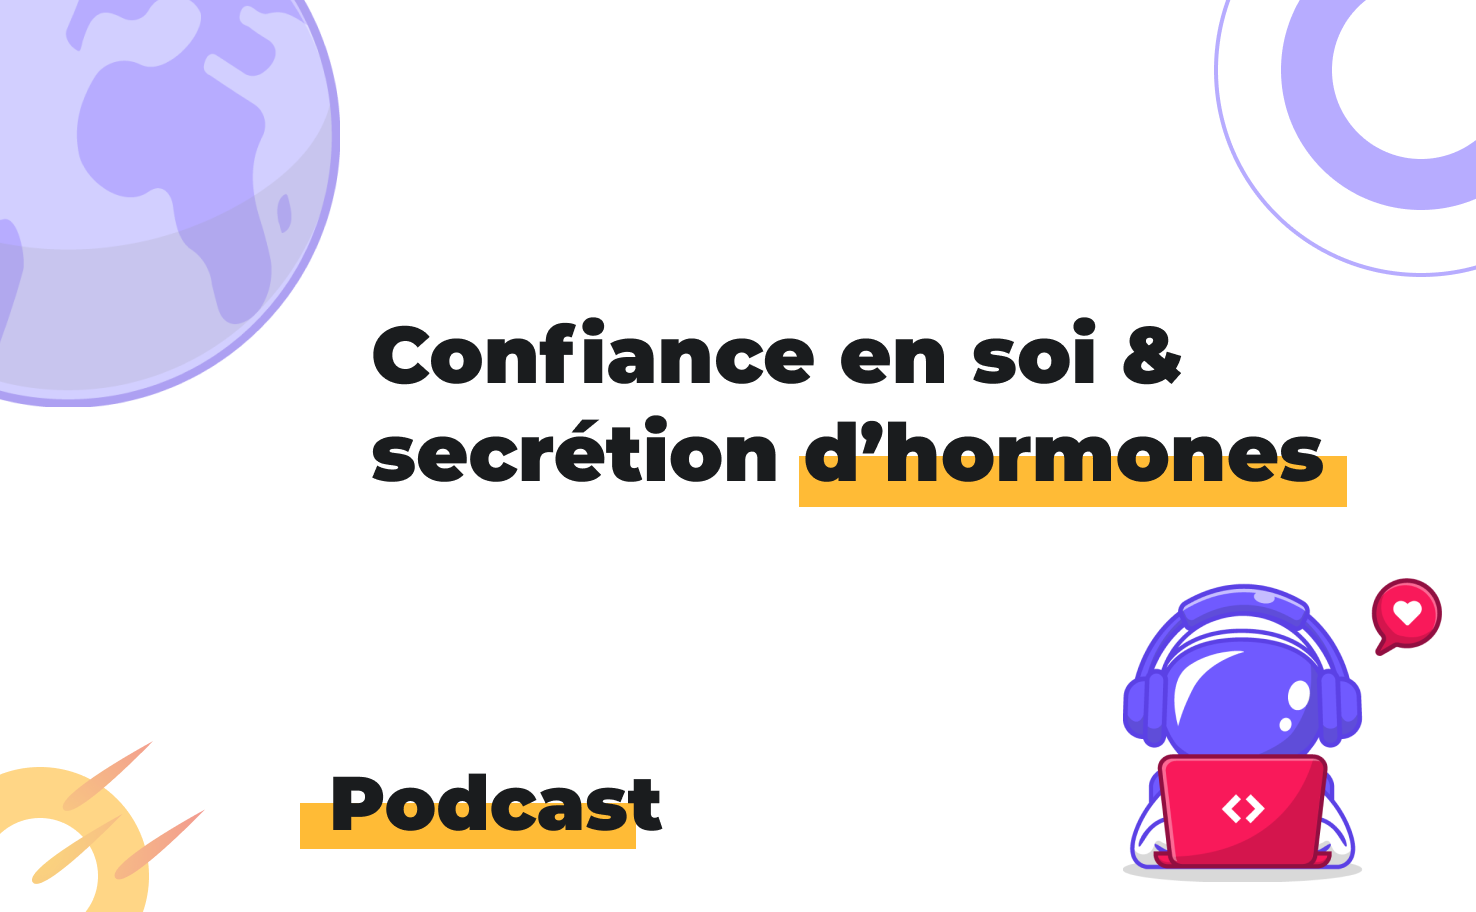 L'image affiche le sujet du podcast: Confiance en soi & sécrétion d'hormones